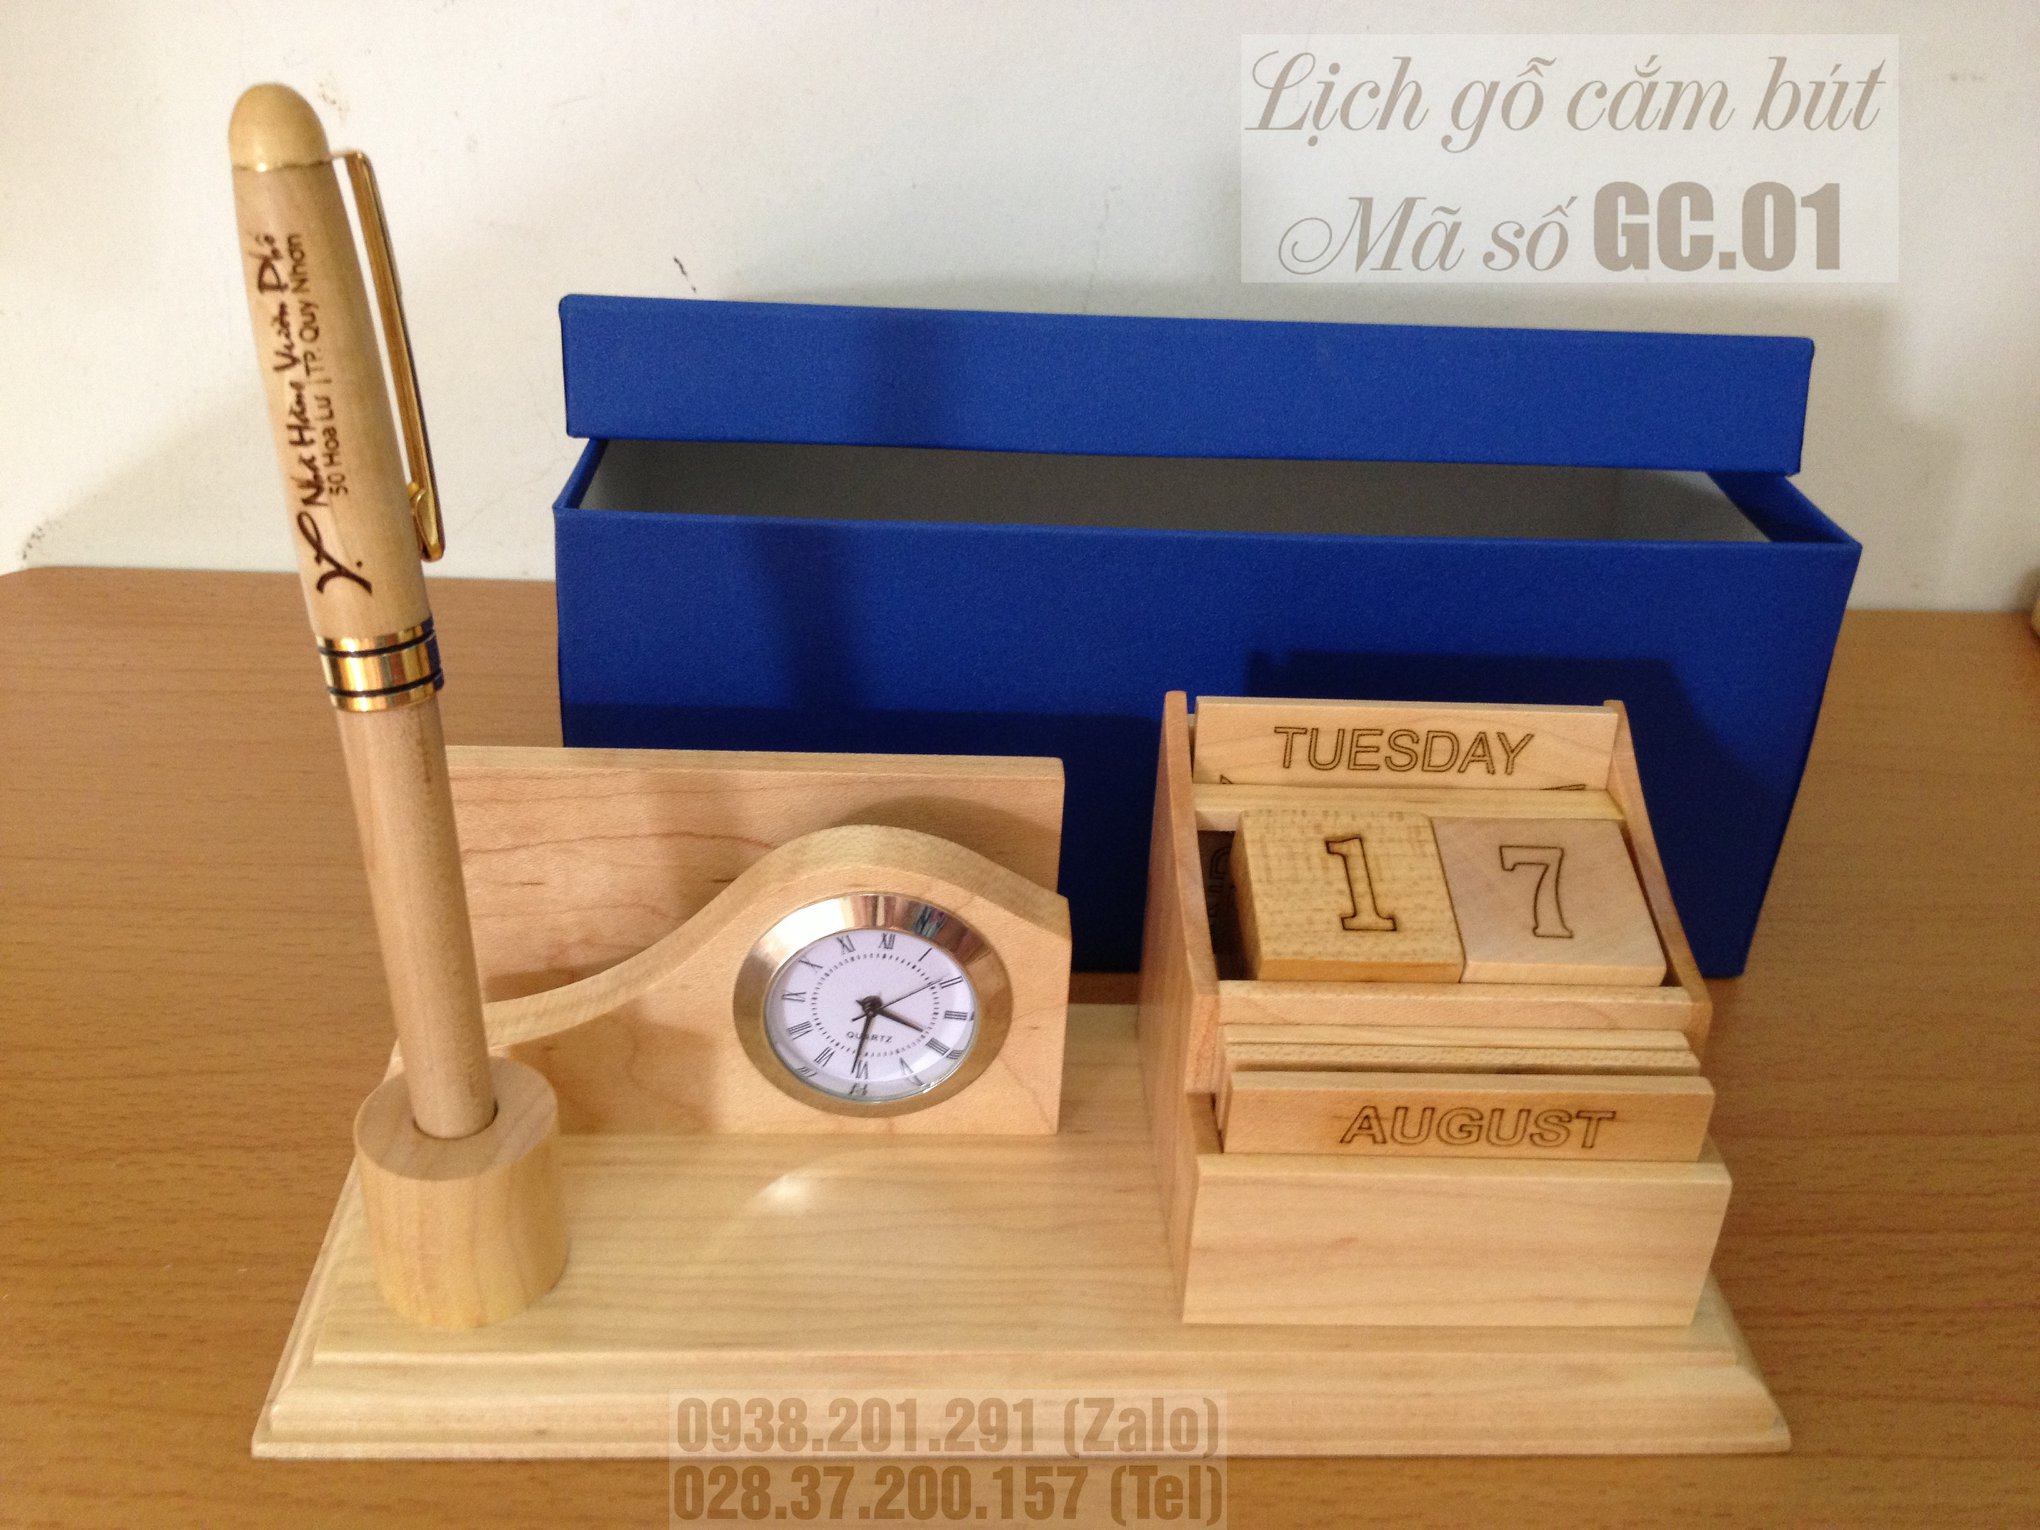 Quà tặng sinh nhật bằng gỗ để bàn cắm bút lịch gỗ khắc tên giá rẻ đẹp cao cấp lấy liền